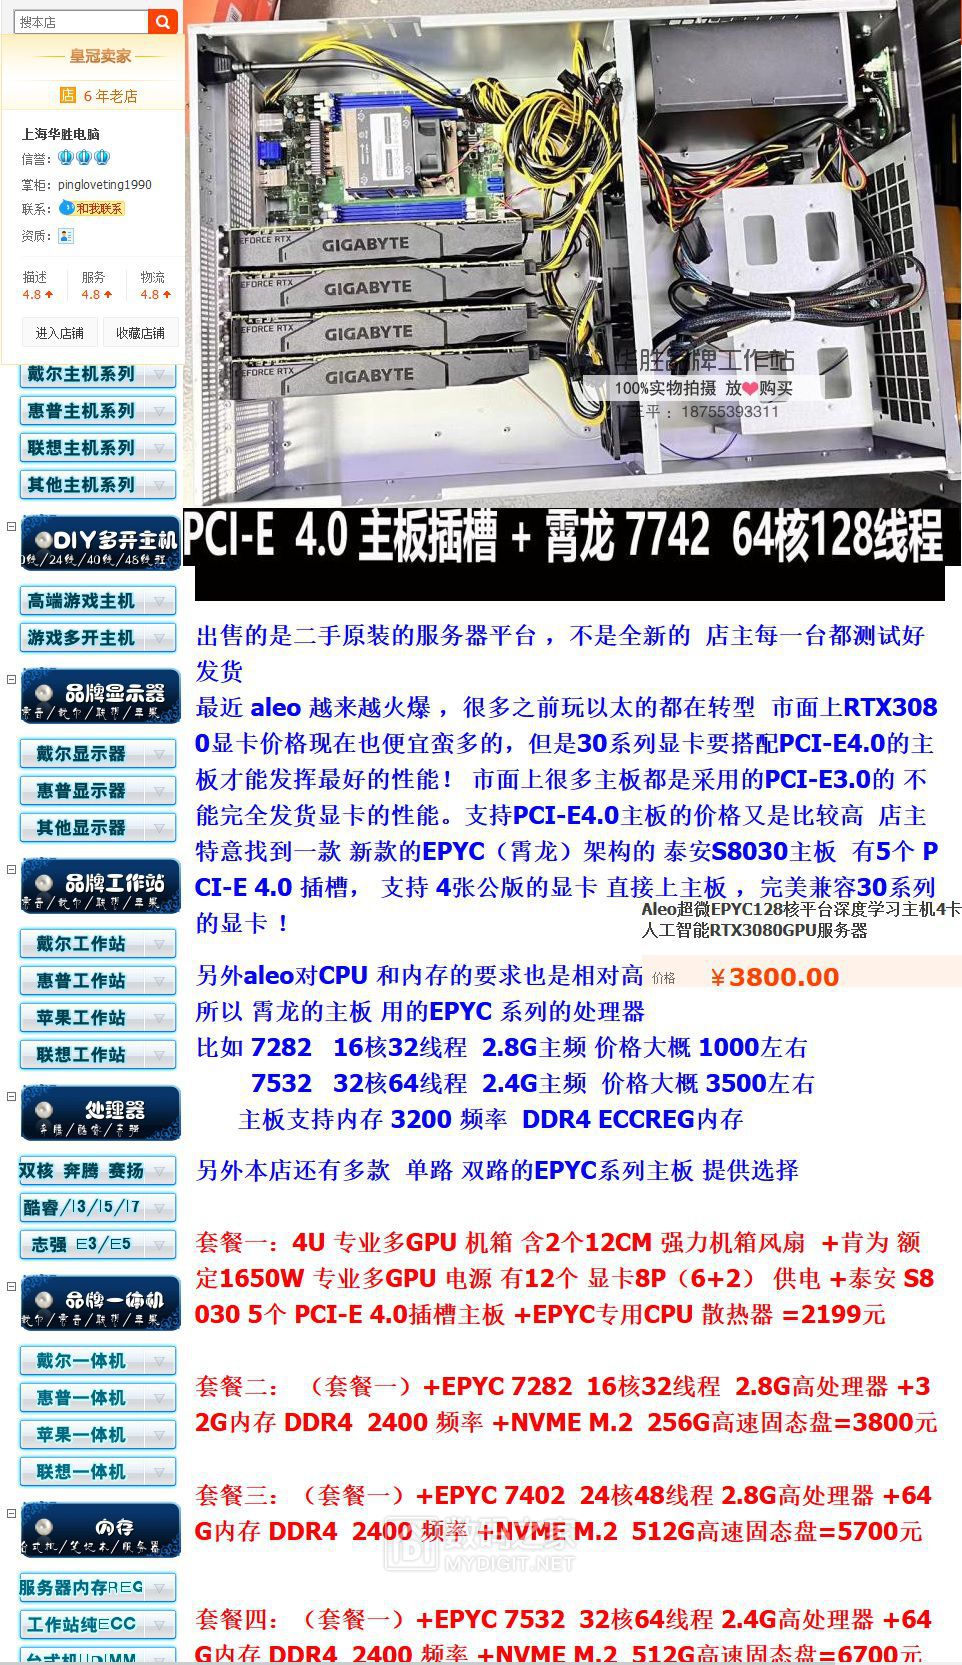 2月11至16超微EPYC128核平台深度学习主机4卡人工智能RTX3080服务器.jpg